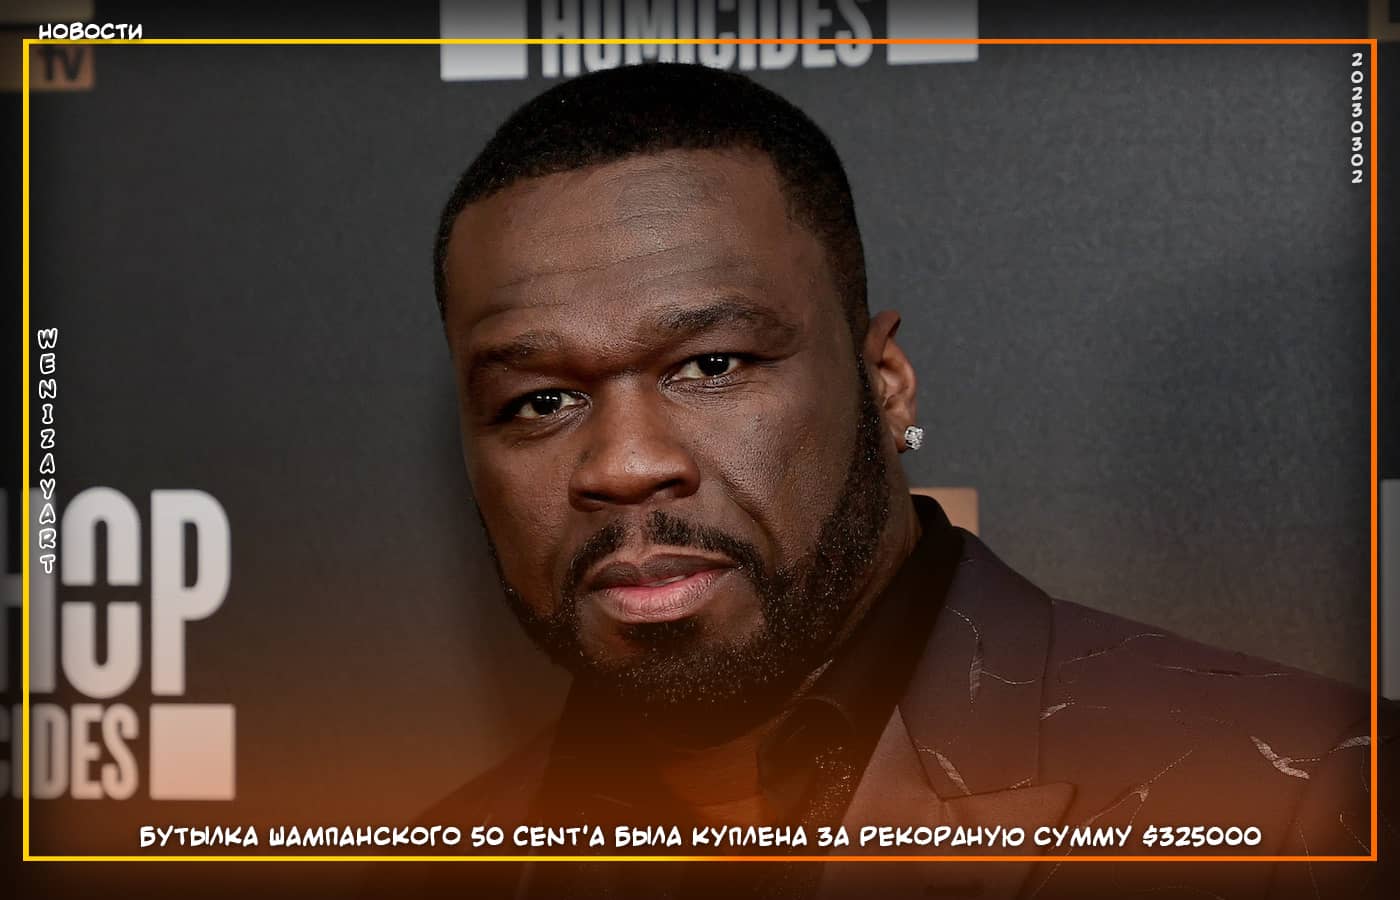 Бутылка шампанского 50 Cent'a была куплена за рекордную сумму $325000, Знаменитости (новости)